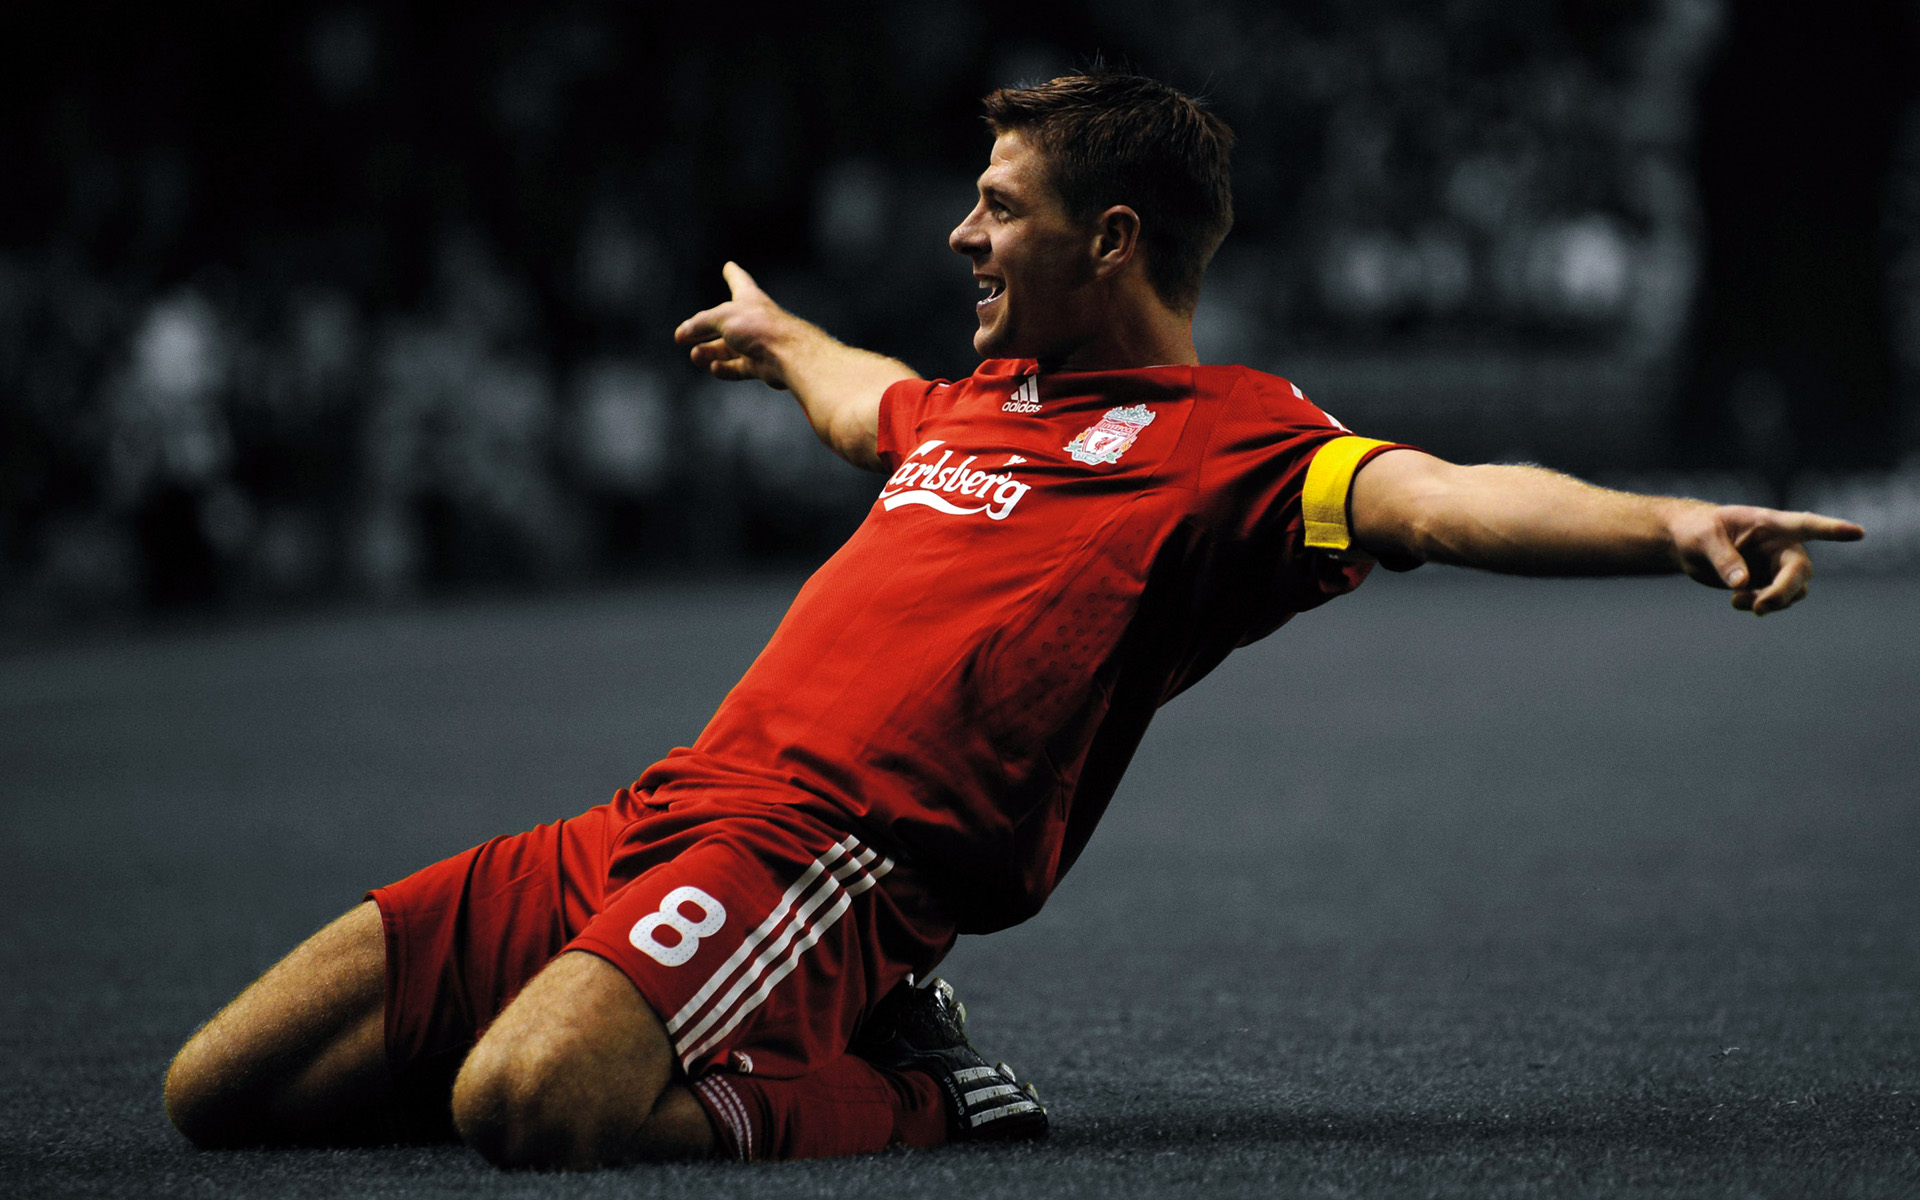 Steven Gerrard 8 Liverpool - HD Wallpaper 